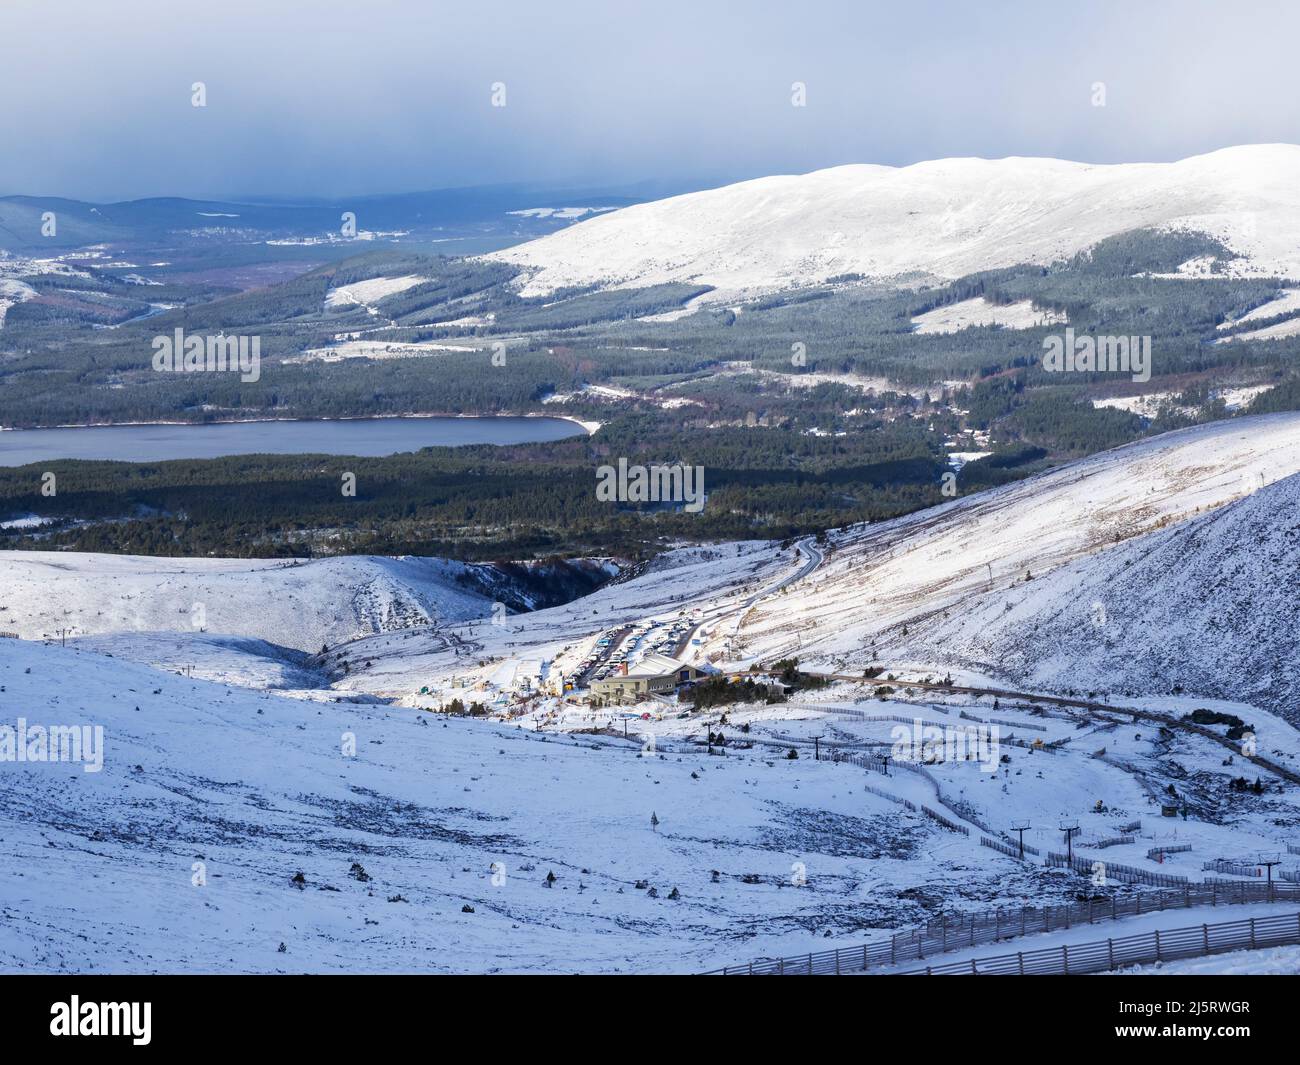 The Cairngorm ski resort above Aviemore, Scotland, UK. Stock Photo